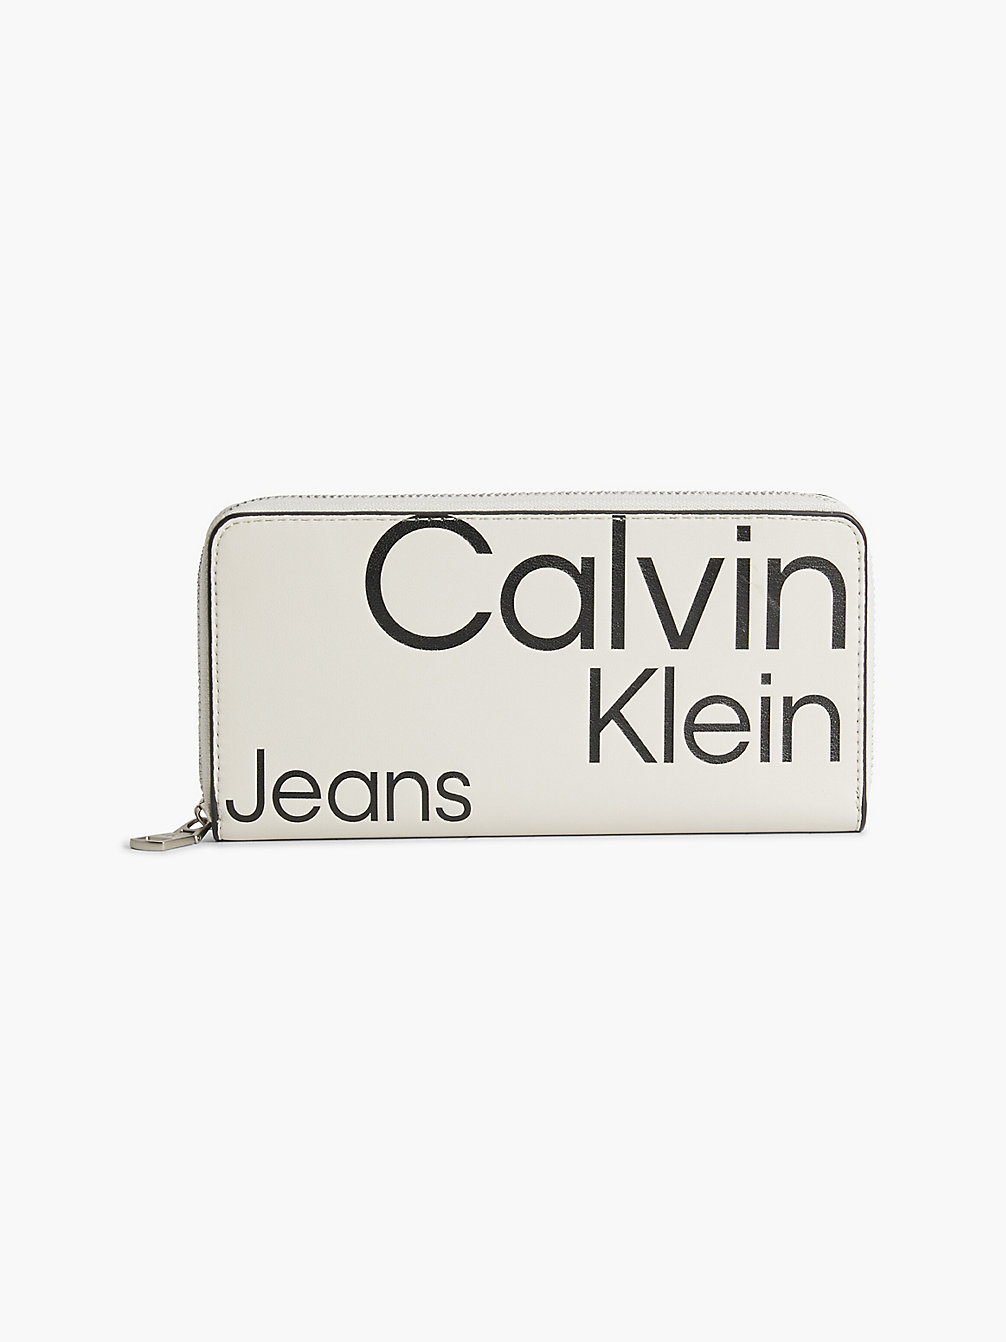 BEIGE AOP Portafoglio Rfid Con Zip Integrale E Logo undefined donna Calvin Klein